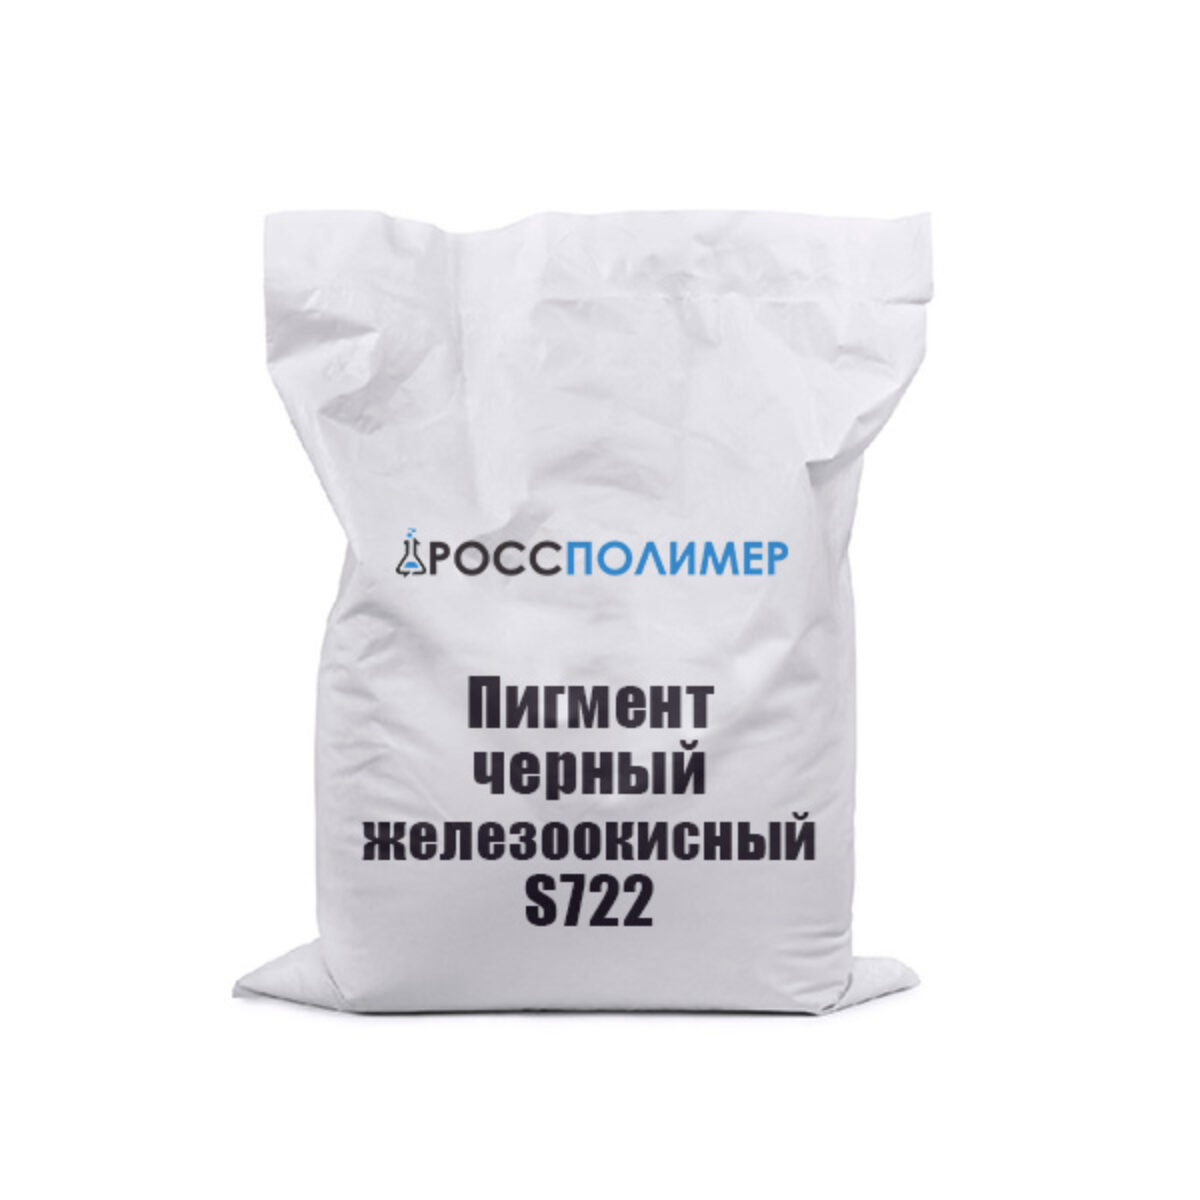 Пигмент железоокисный в Ярославле - сравнить цены и купить